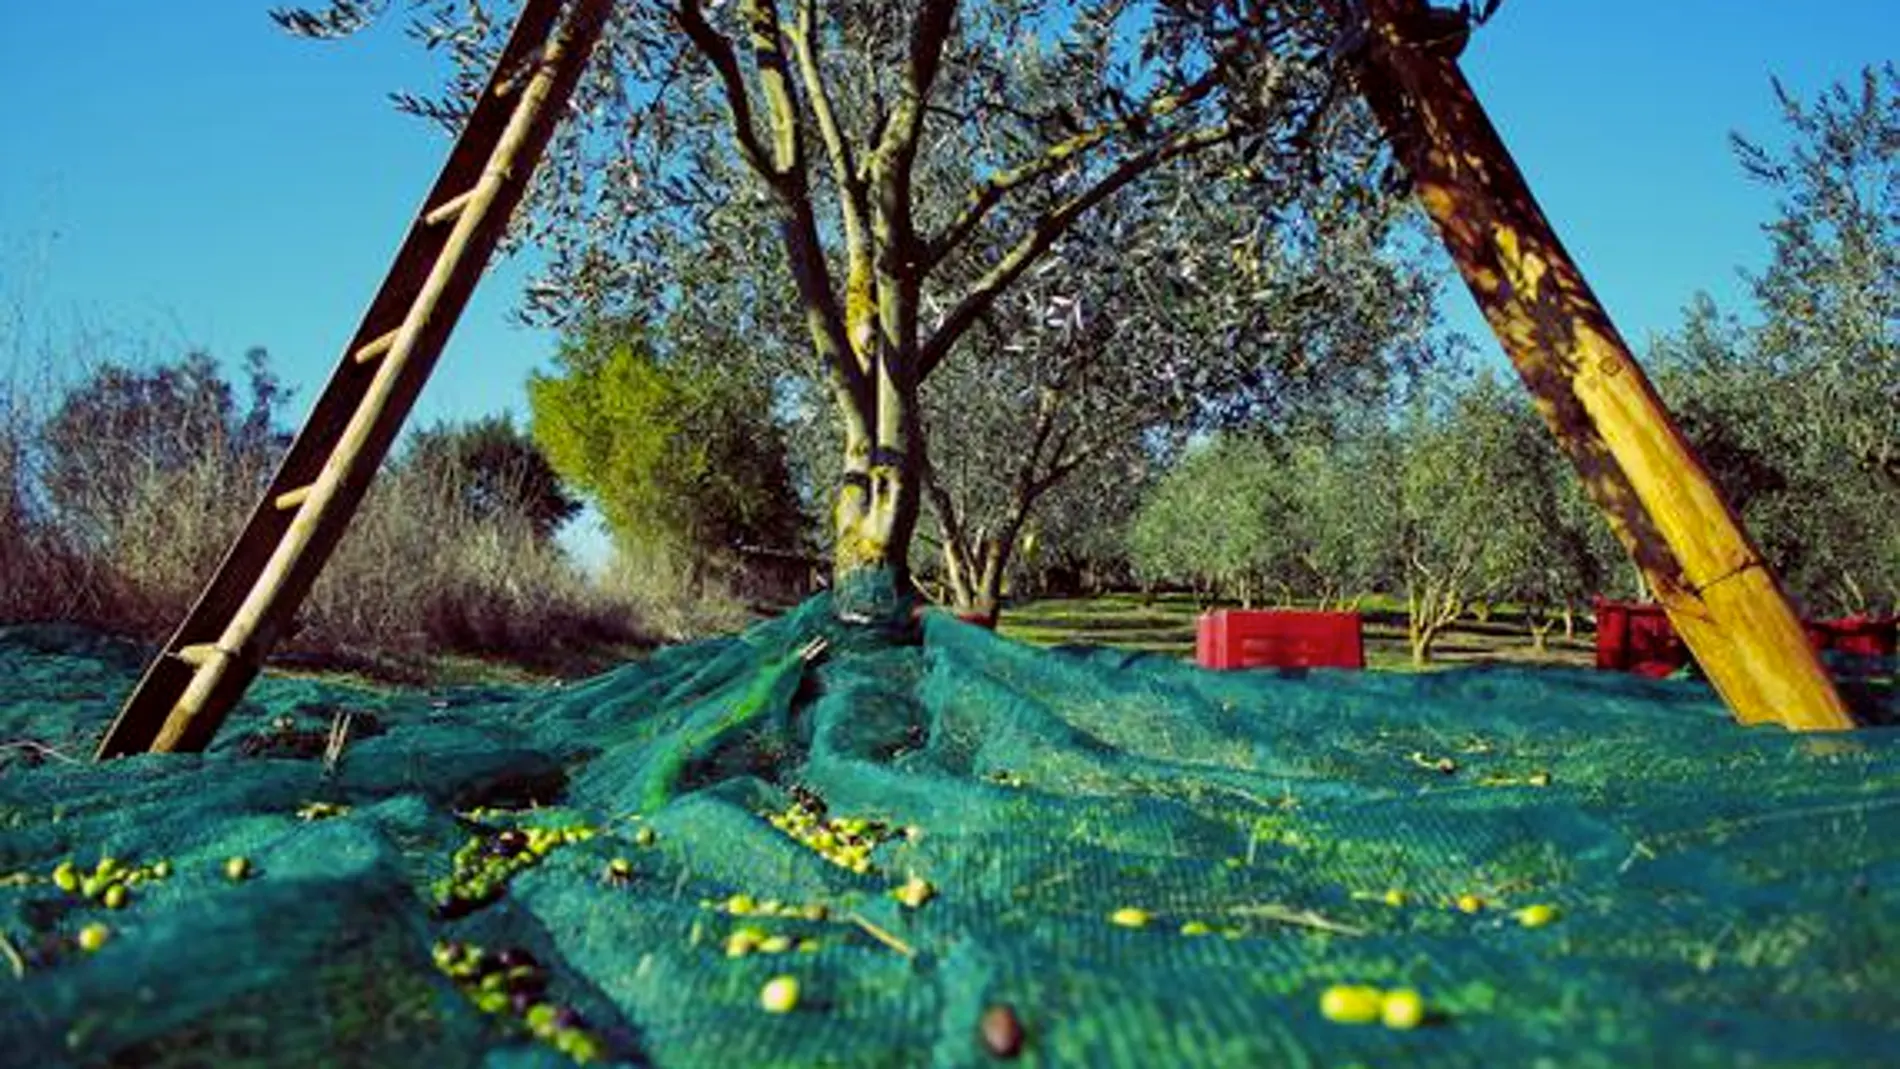 La cultura de la oliva ha desempeñado un papel históricamente muy importante en el desarrollo rural de España